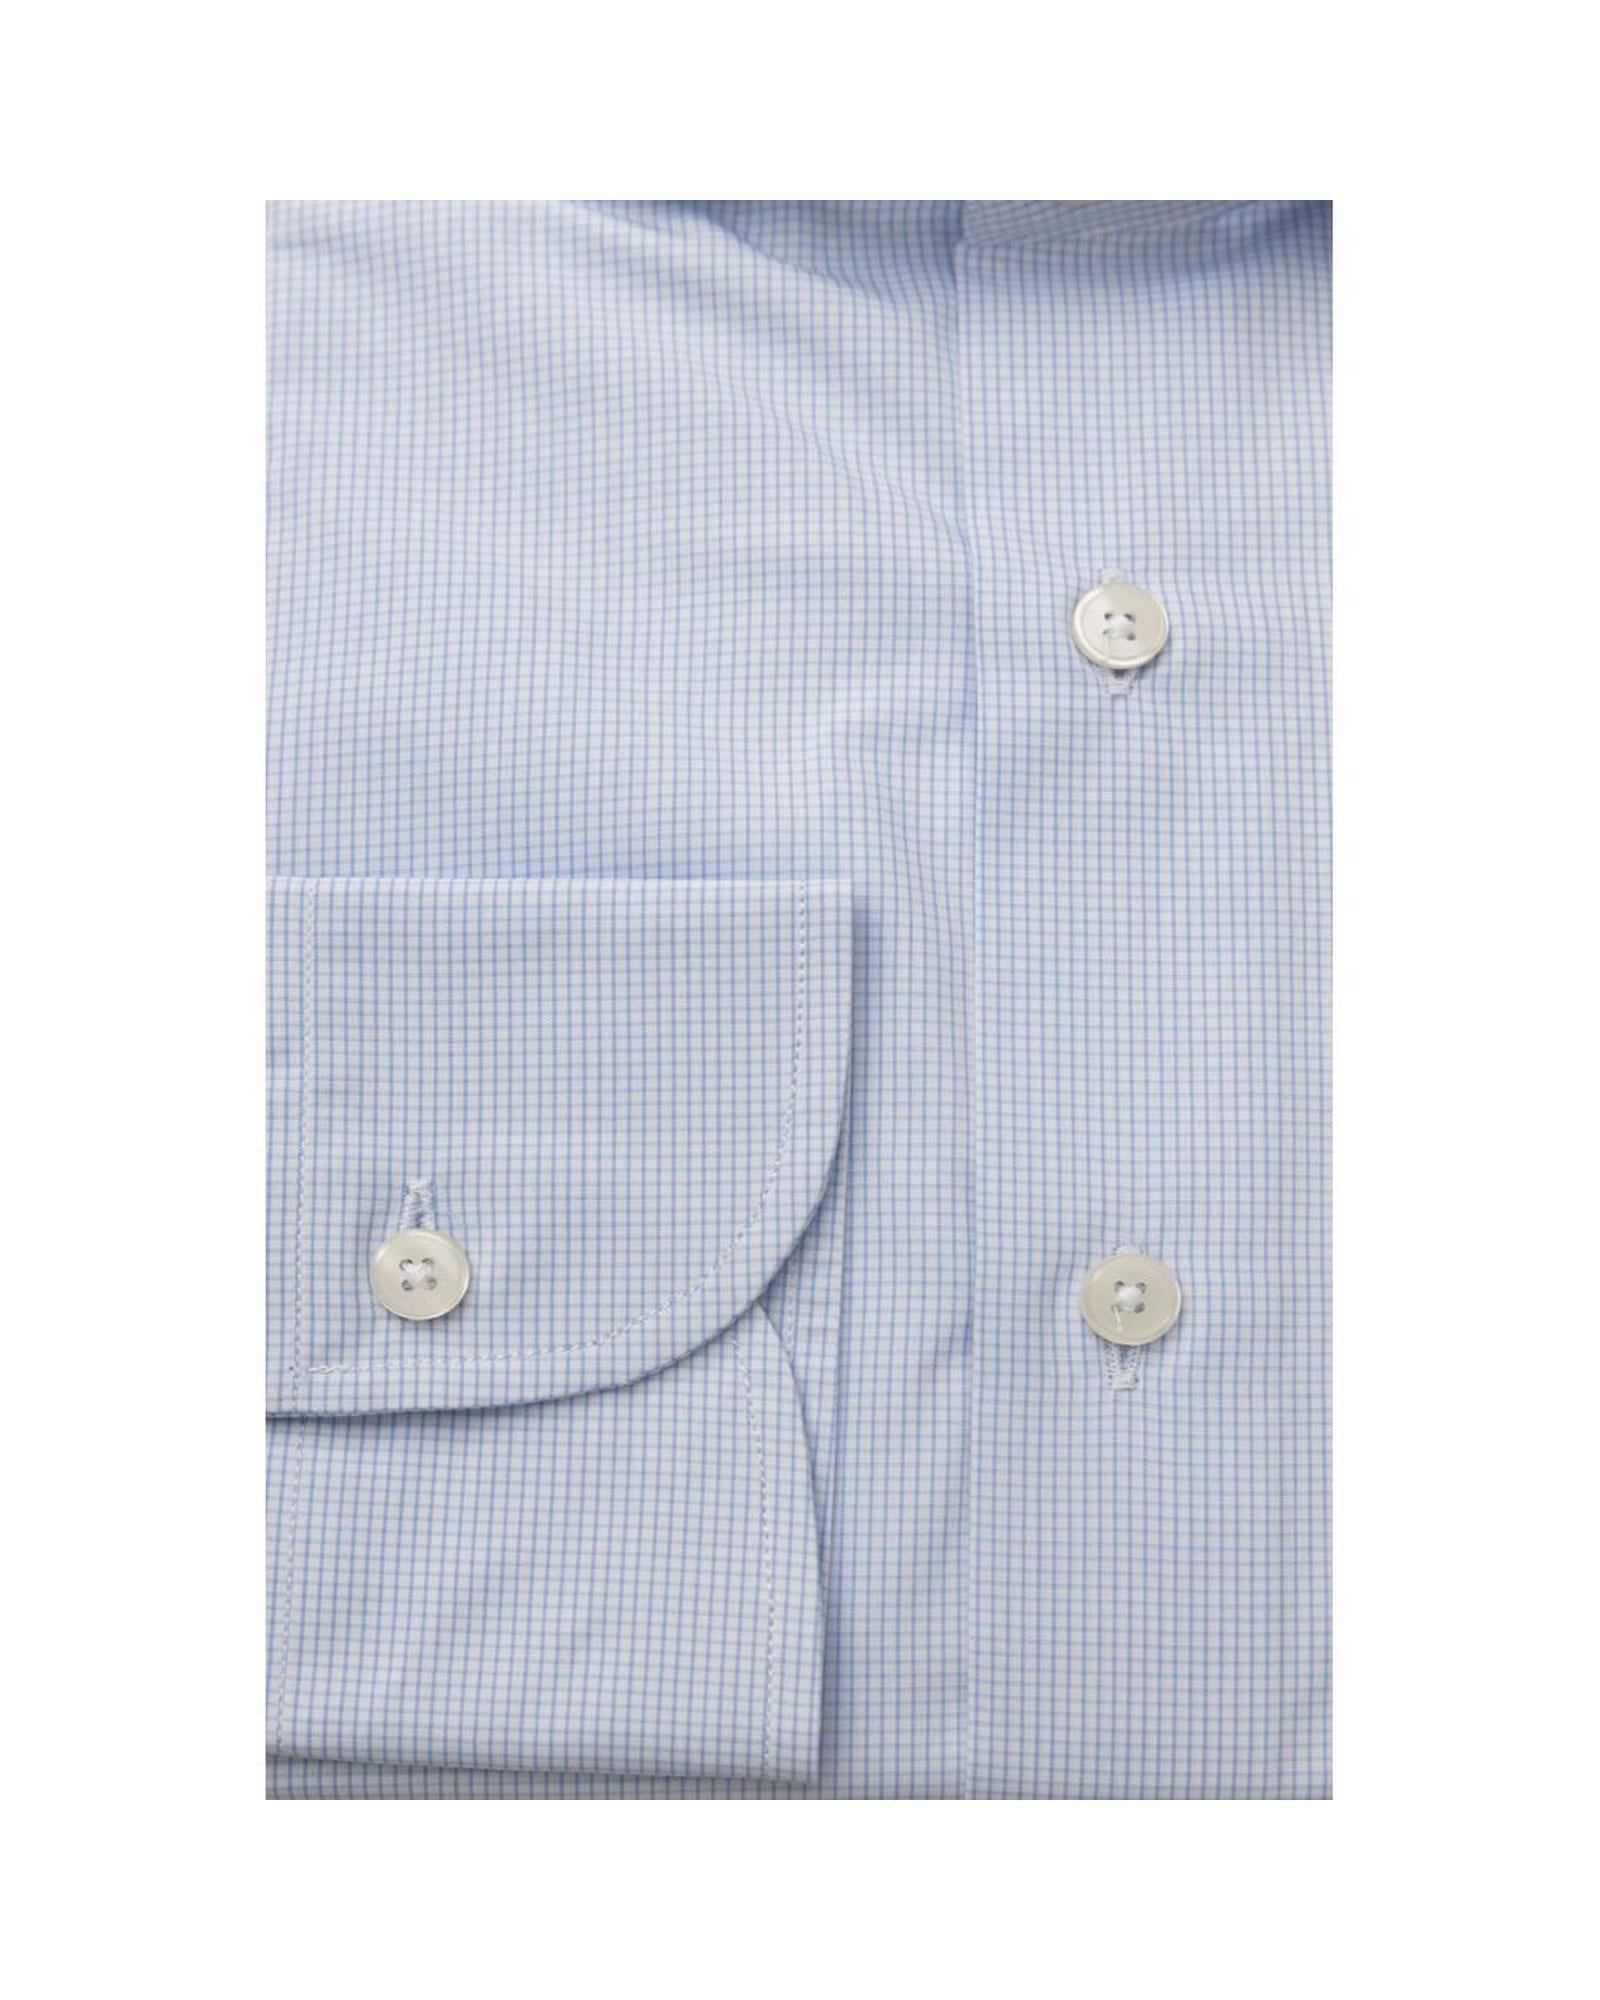 Men's Light Blue Cotton Shirt - L